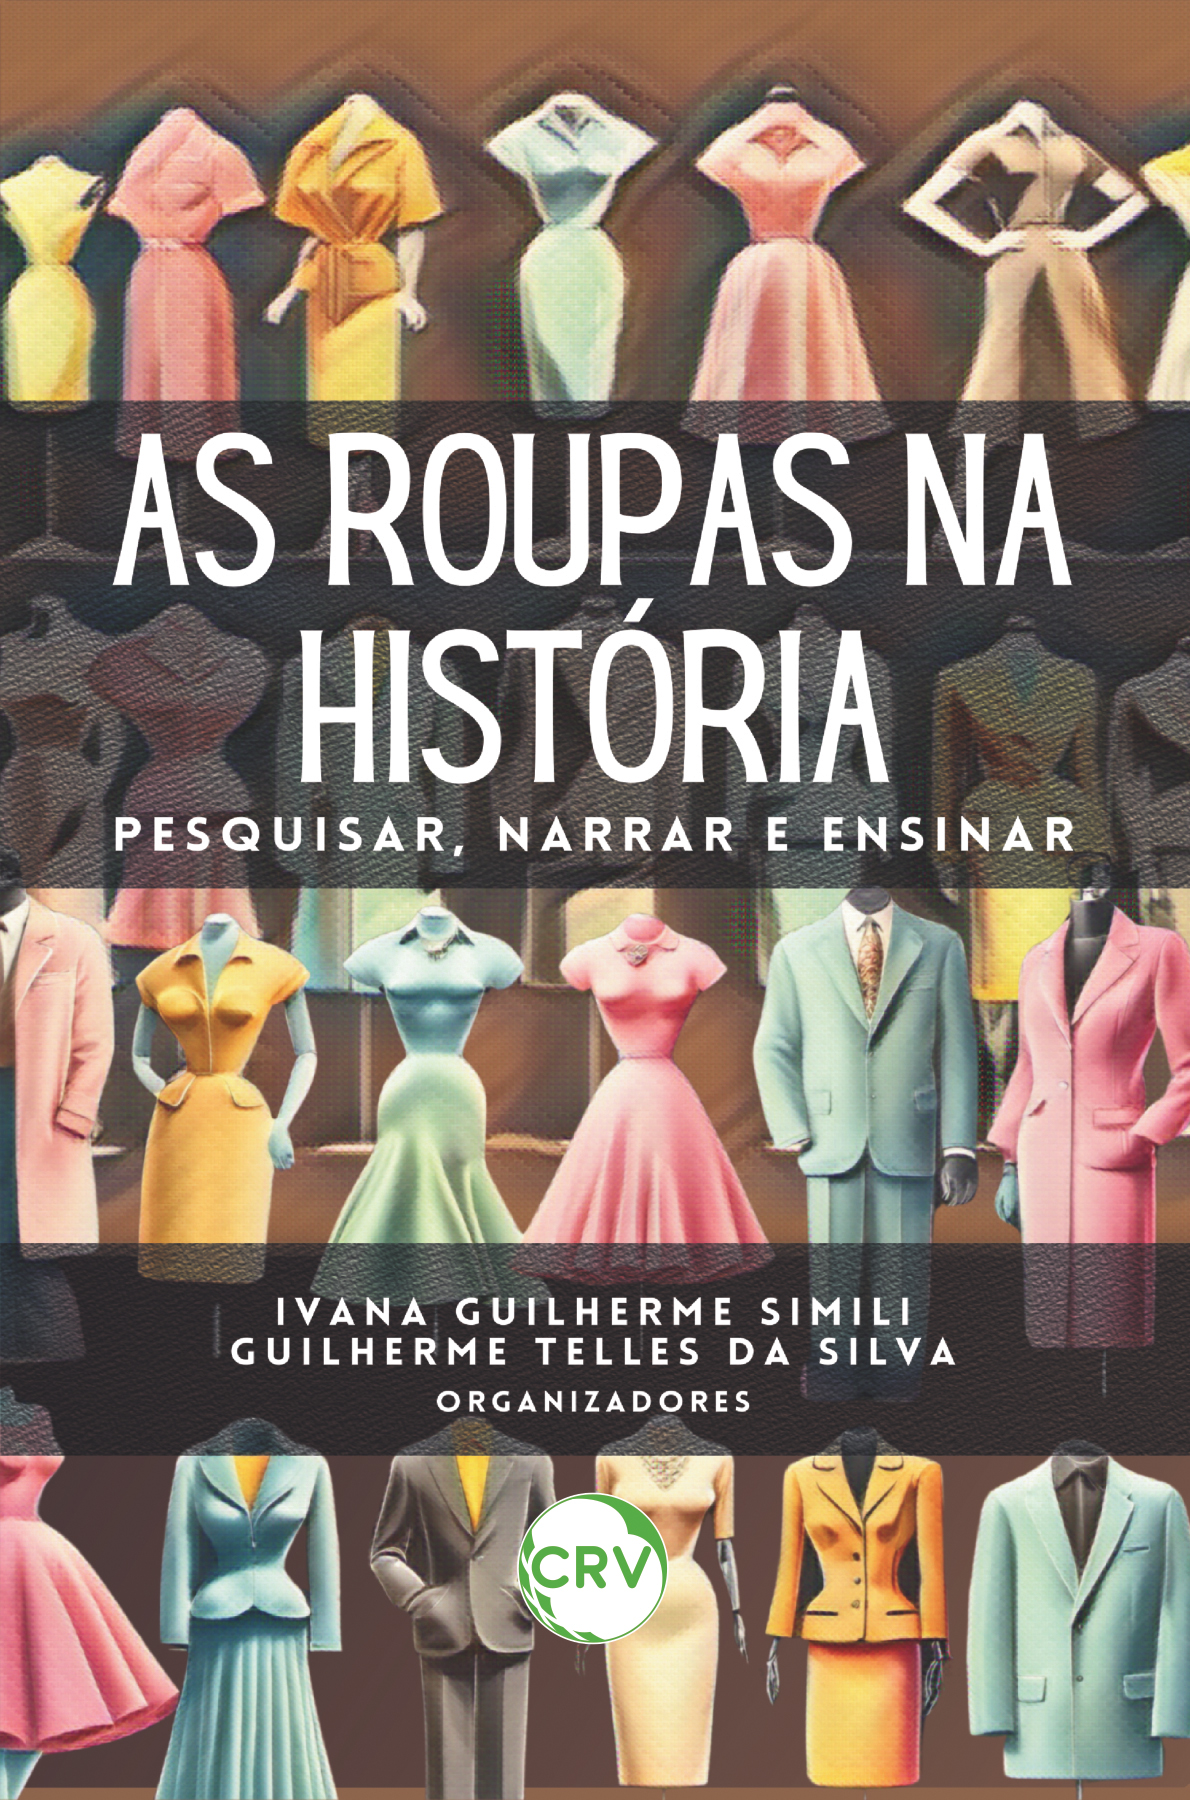 Capa do livro: As roupas na história: <br>Pesquisar, narrar e ensinar